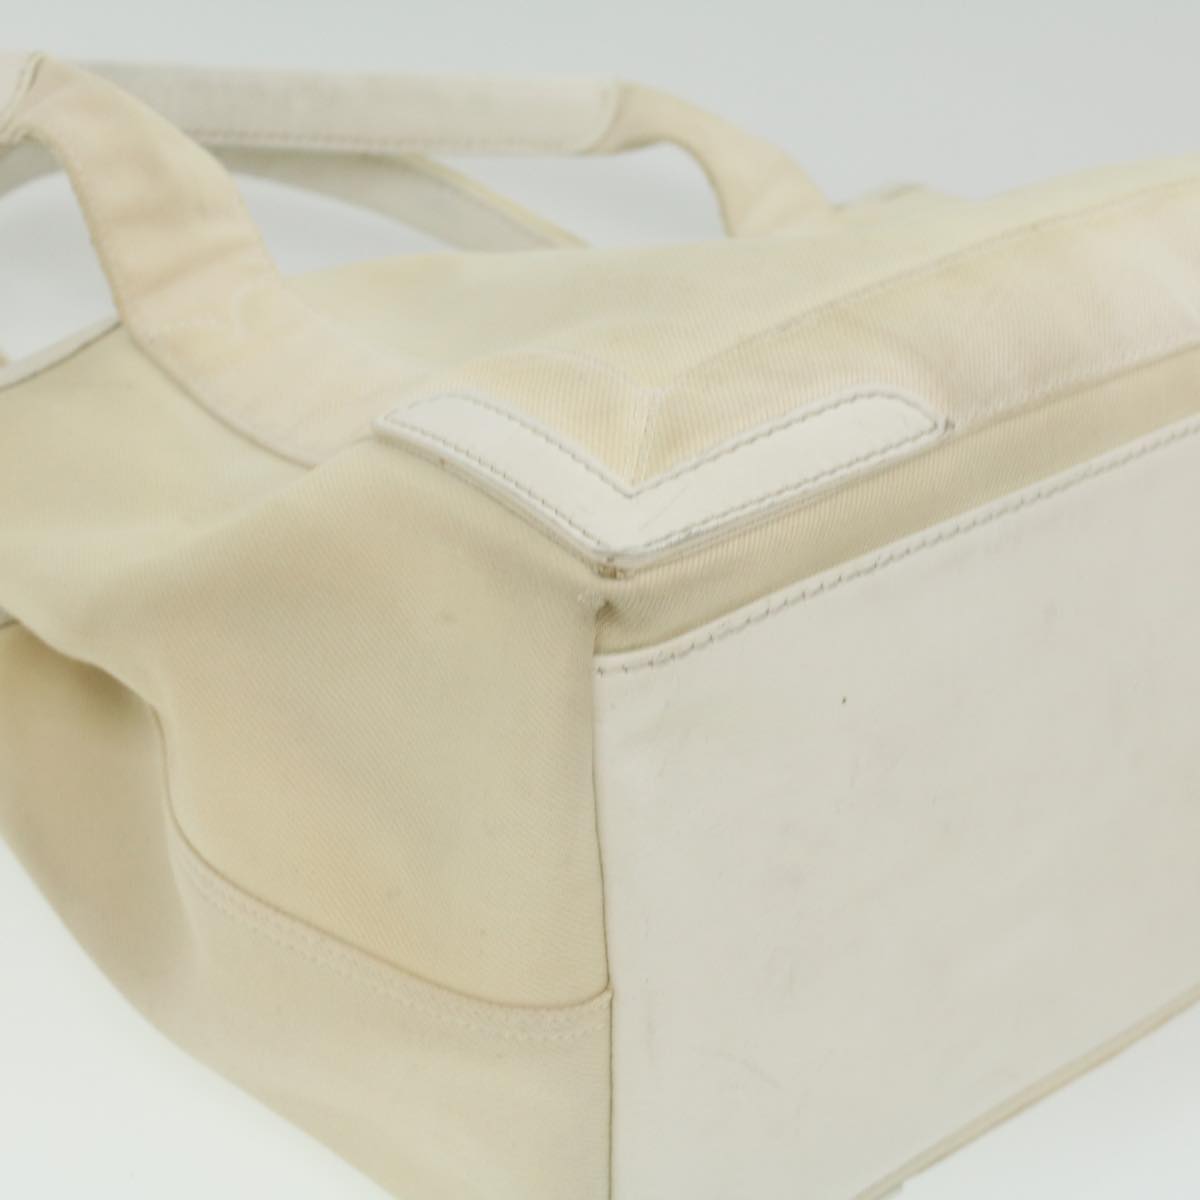 BALENCIAGA Cabas S Hand Bag Canvas White 339933 Auth yk6029